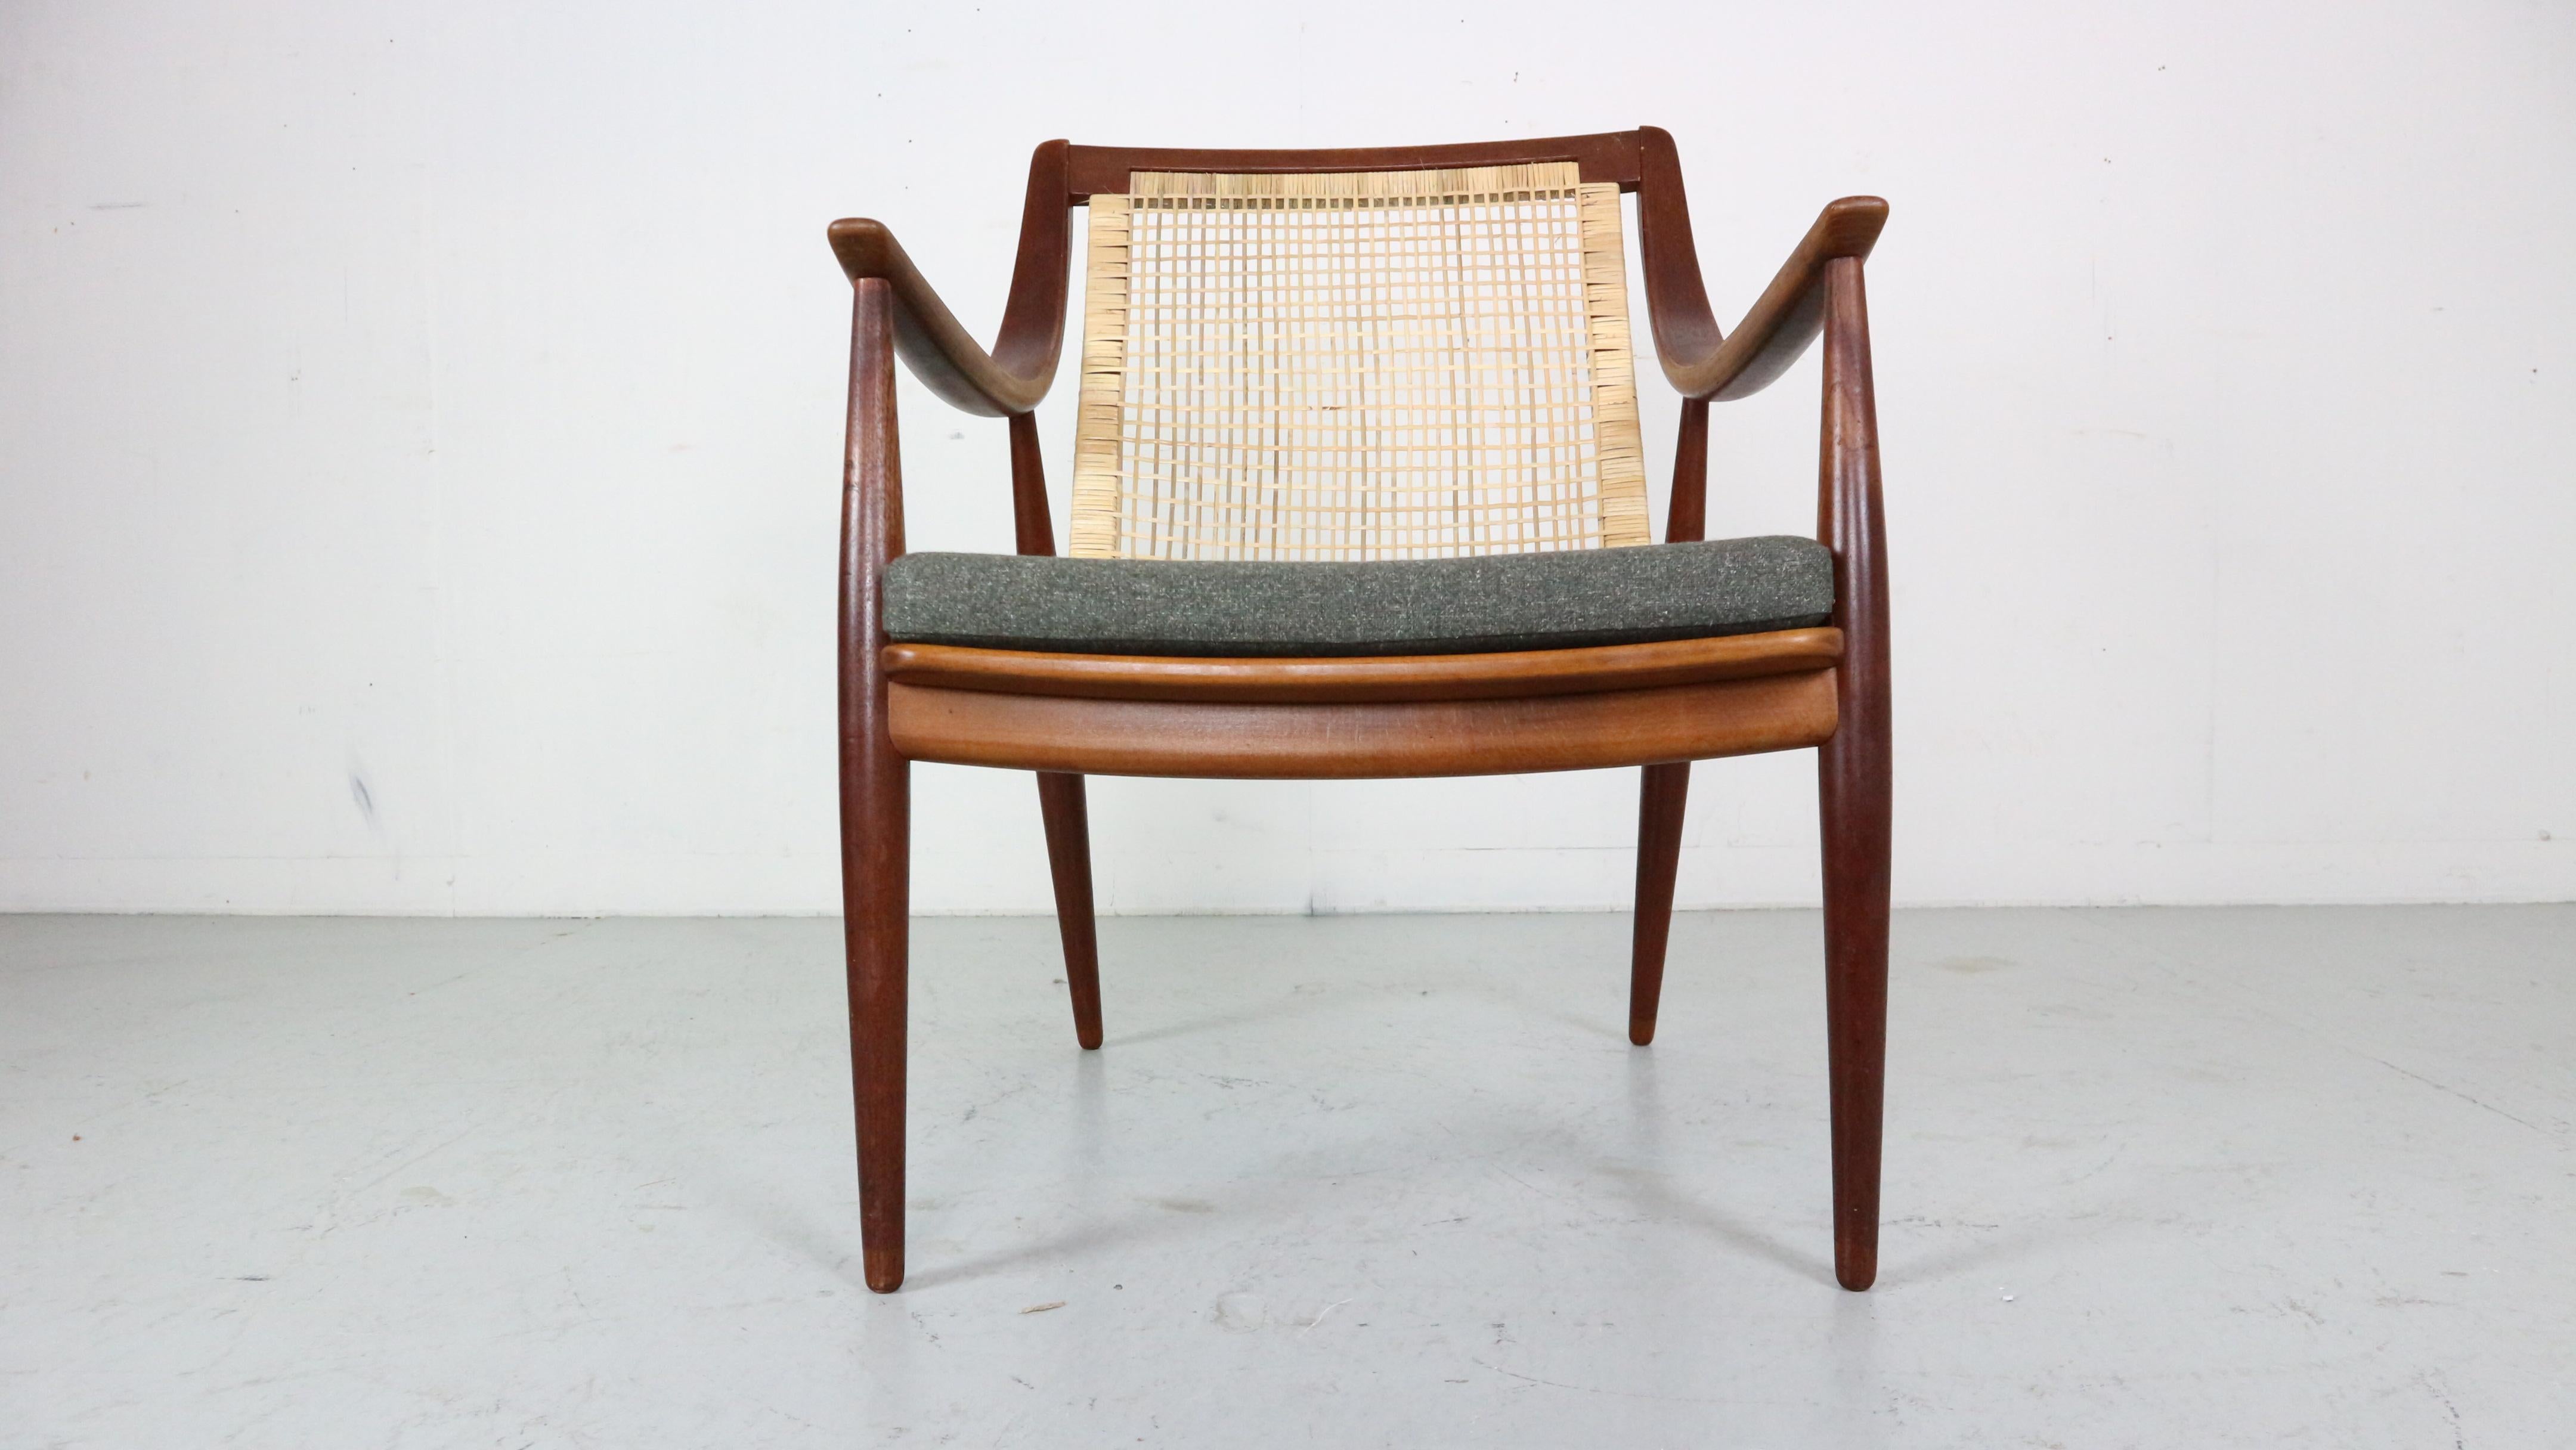 Un design classique réalisé par l'un des plus grands couples de designers danois : Hvidt & Mølgaard, fabriqué par France & Daverkosen dans le Danemark des années 1960.
Numéro de modèle- 146, la chaise a une étiquette d'origine.

Cette chaise longue